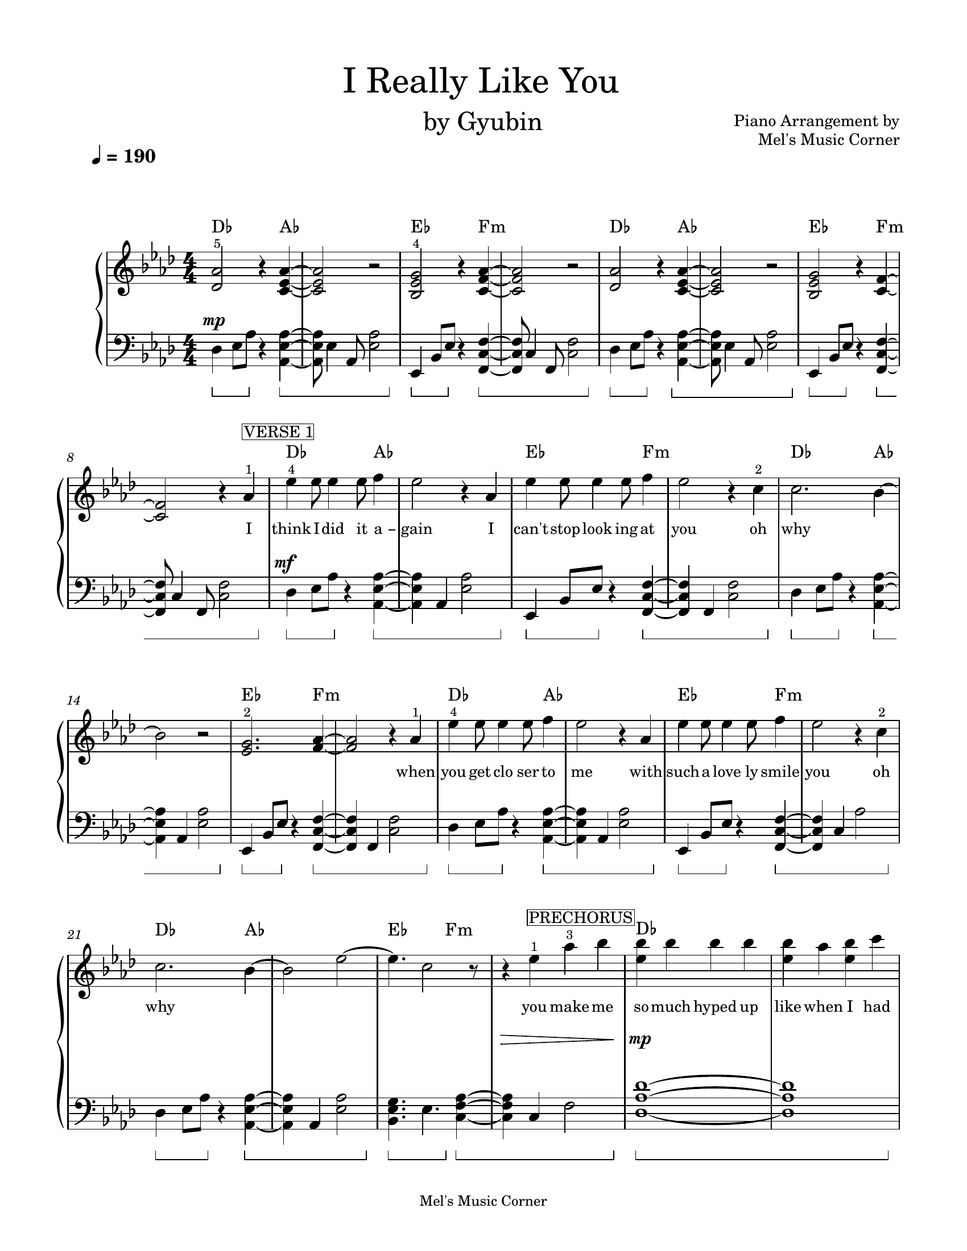 규빈 (Gyubin) - I Really Like You (piano sheet music) by Mel's Music Corner